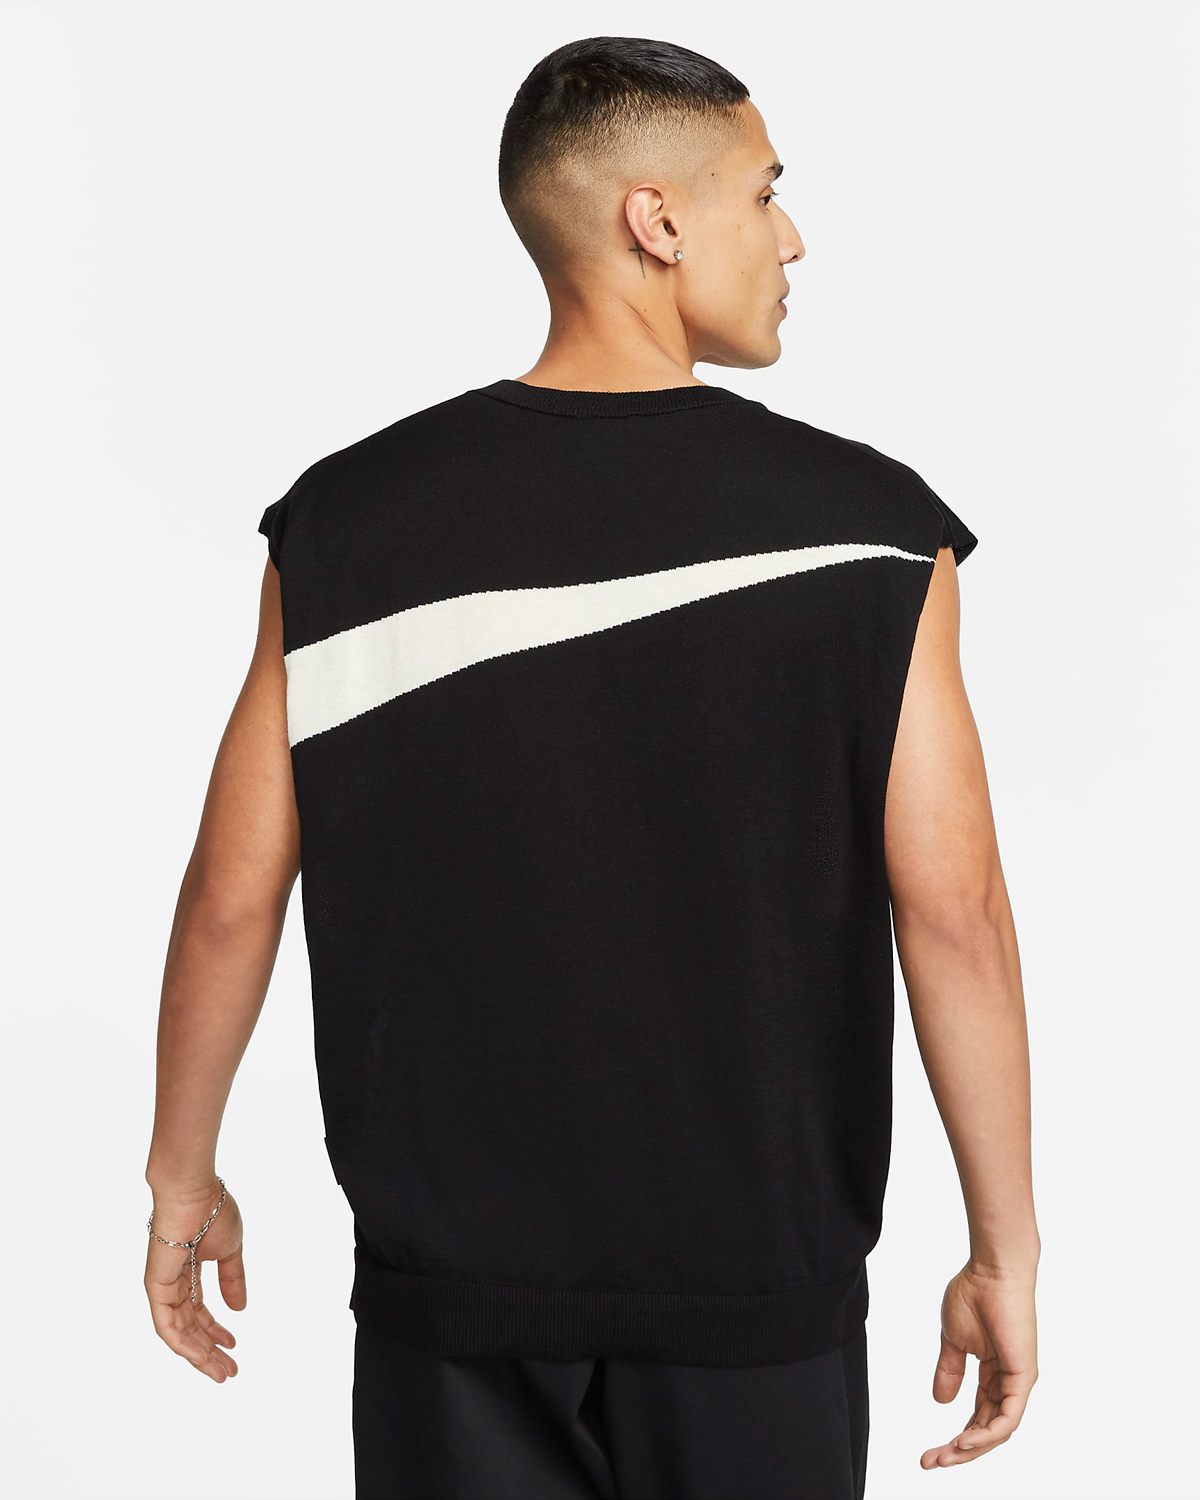 Nike-Sportswear-Swoosh-Sweater-Vest-Black-Coconut-Milk-2